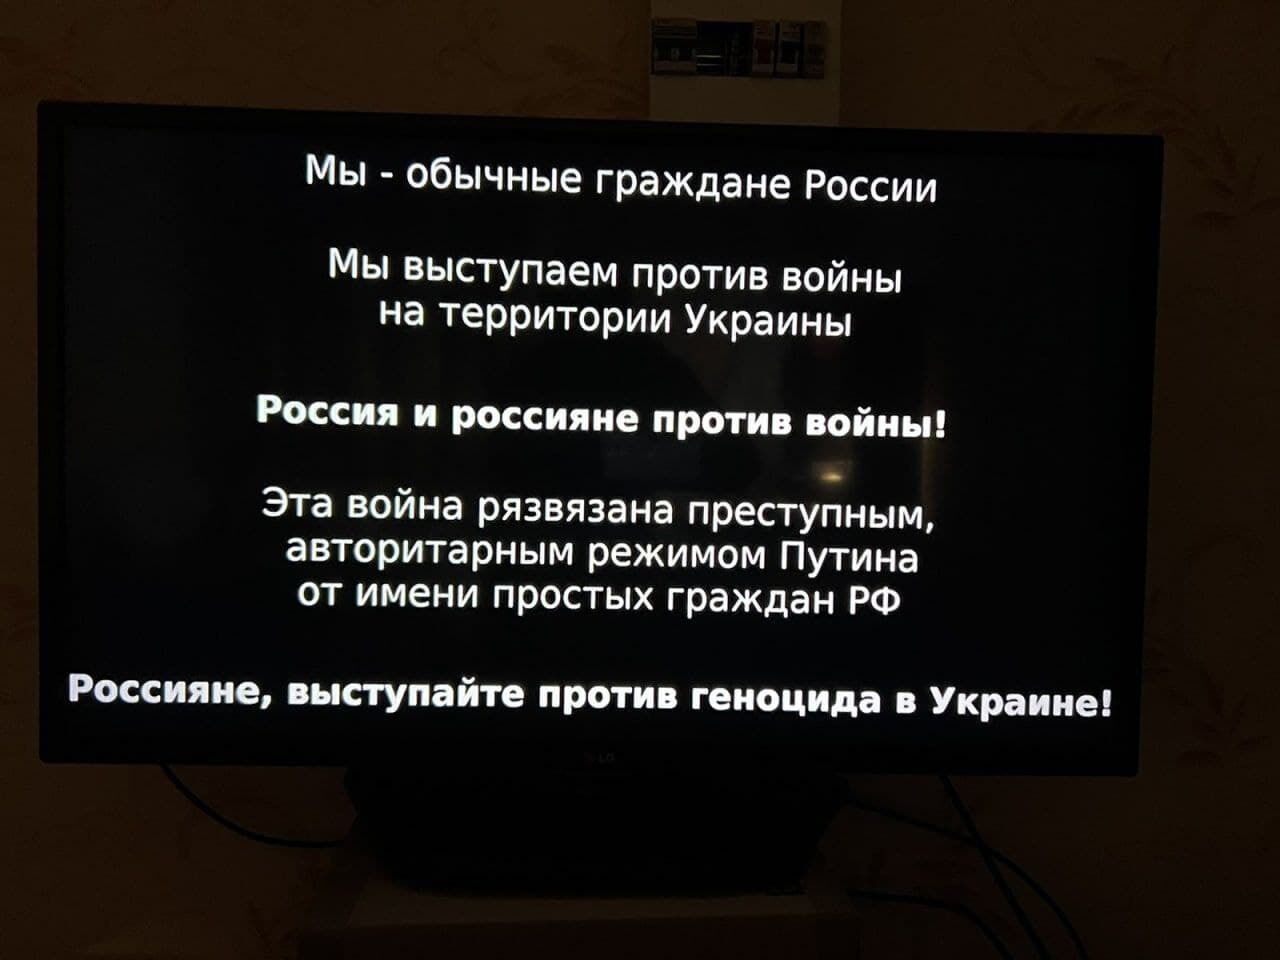 "Ця війна розв'язана злочинним режимом": на відеосервісах у РФ почали транслювати антивоєнну агітацію. Фото і відео